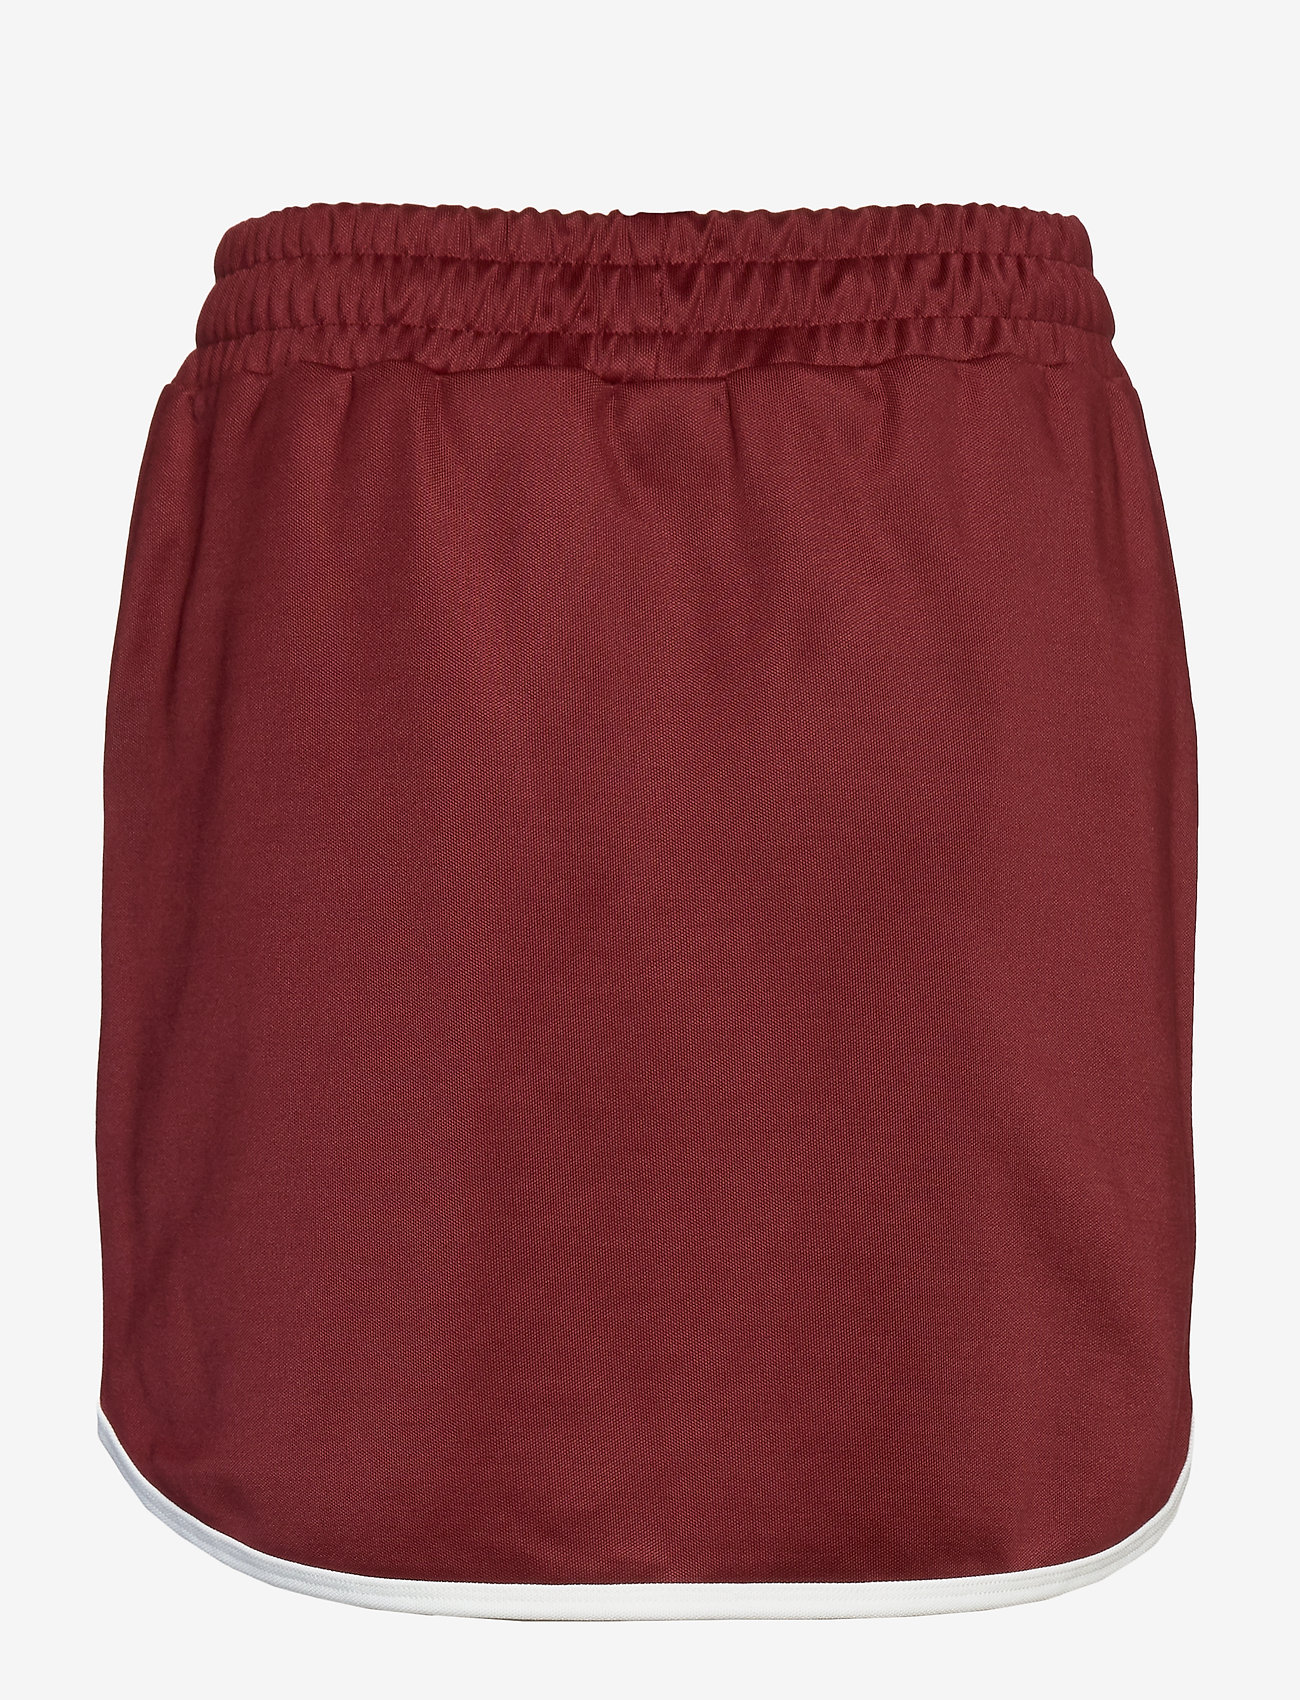 red fila skirt